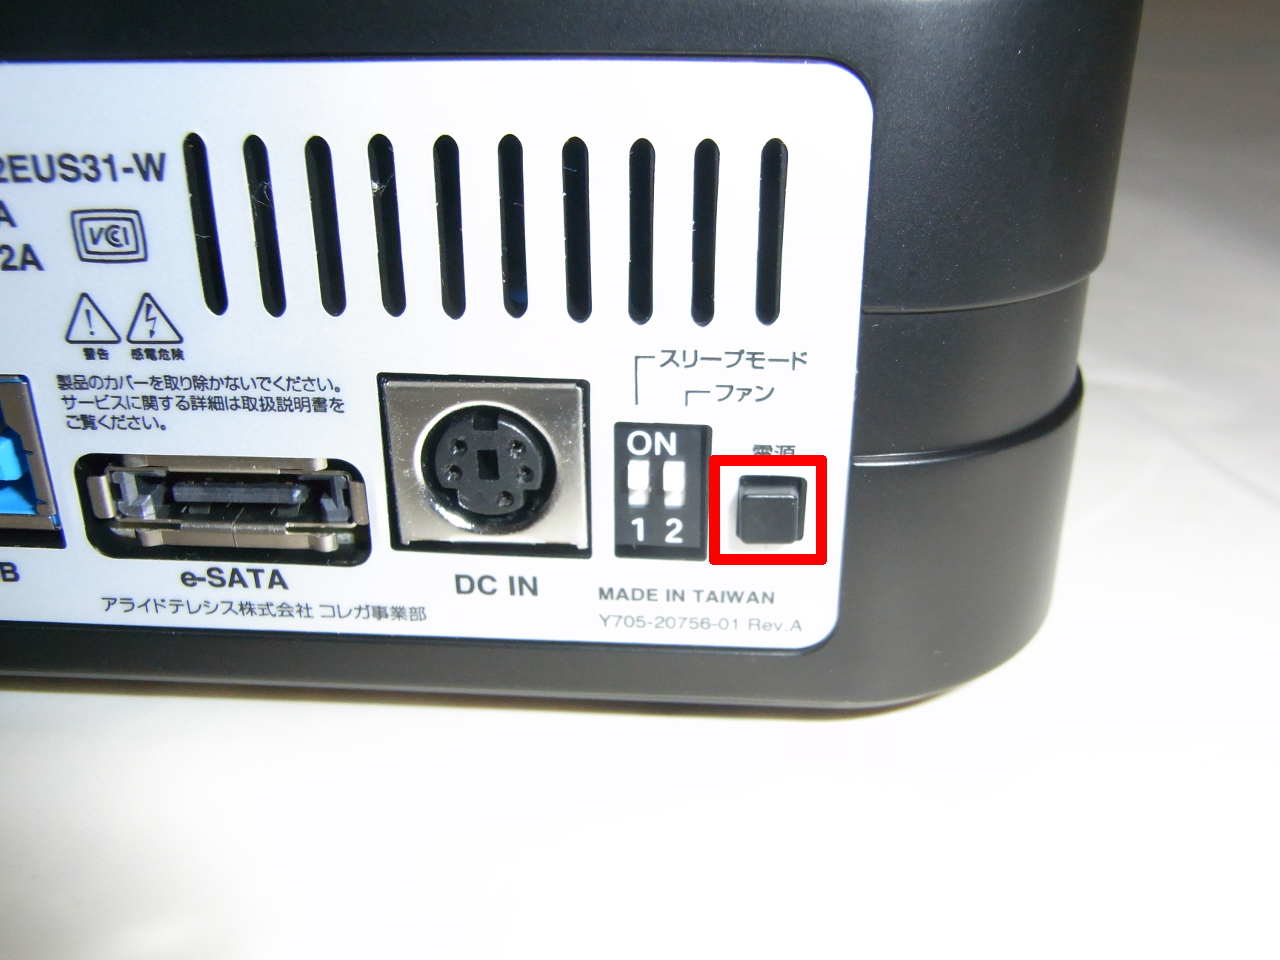 CG-HDC2EUS31-Wの電源ボタン